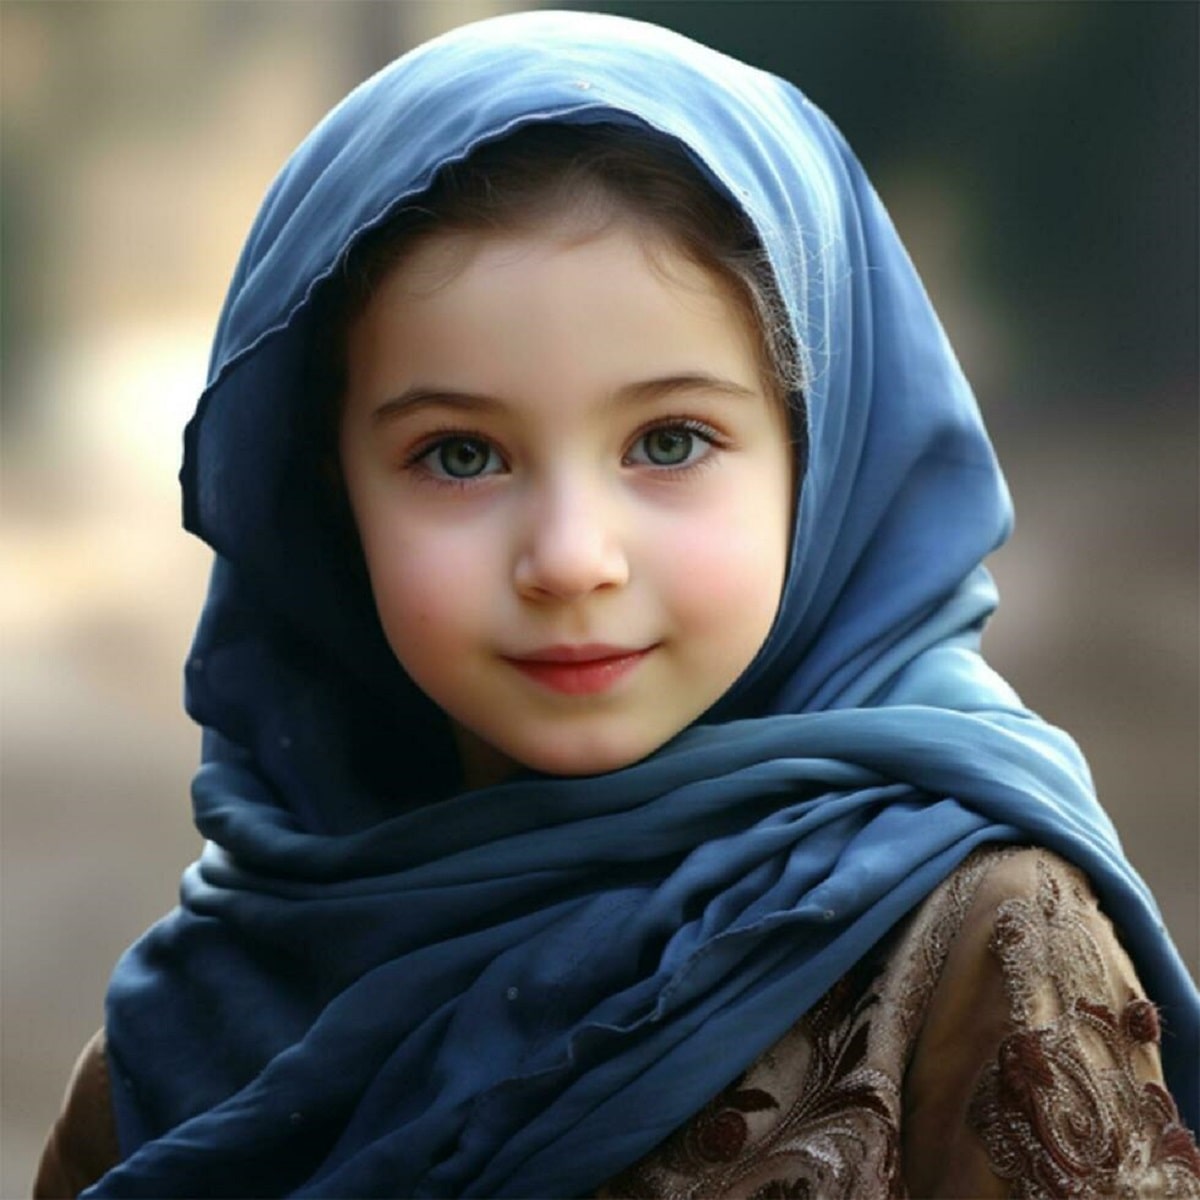 لقاب حضرت زهرا برای نامگذاری اسم دختر